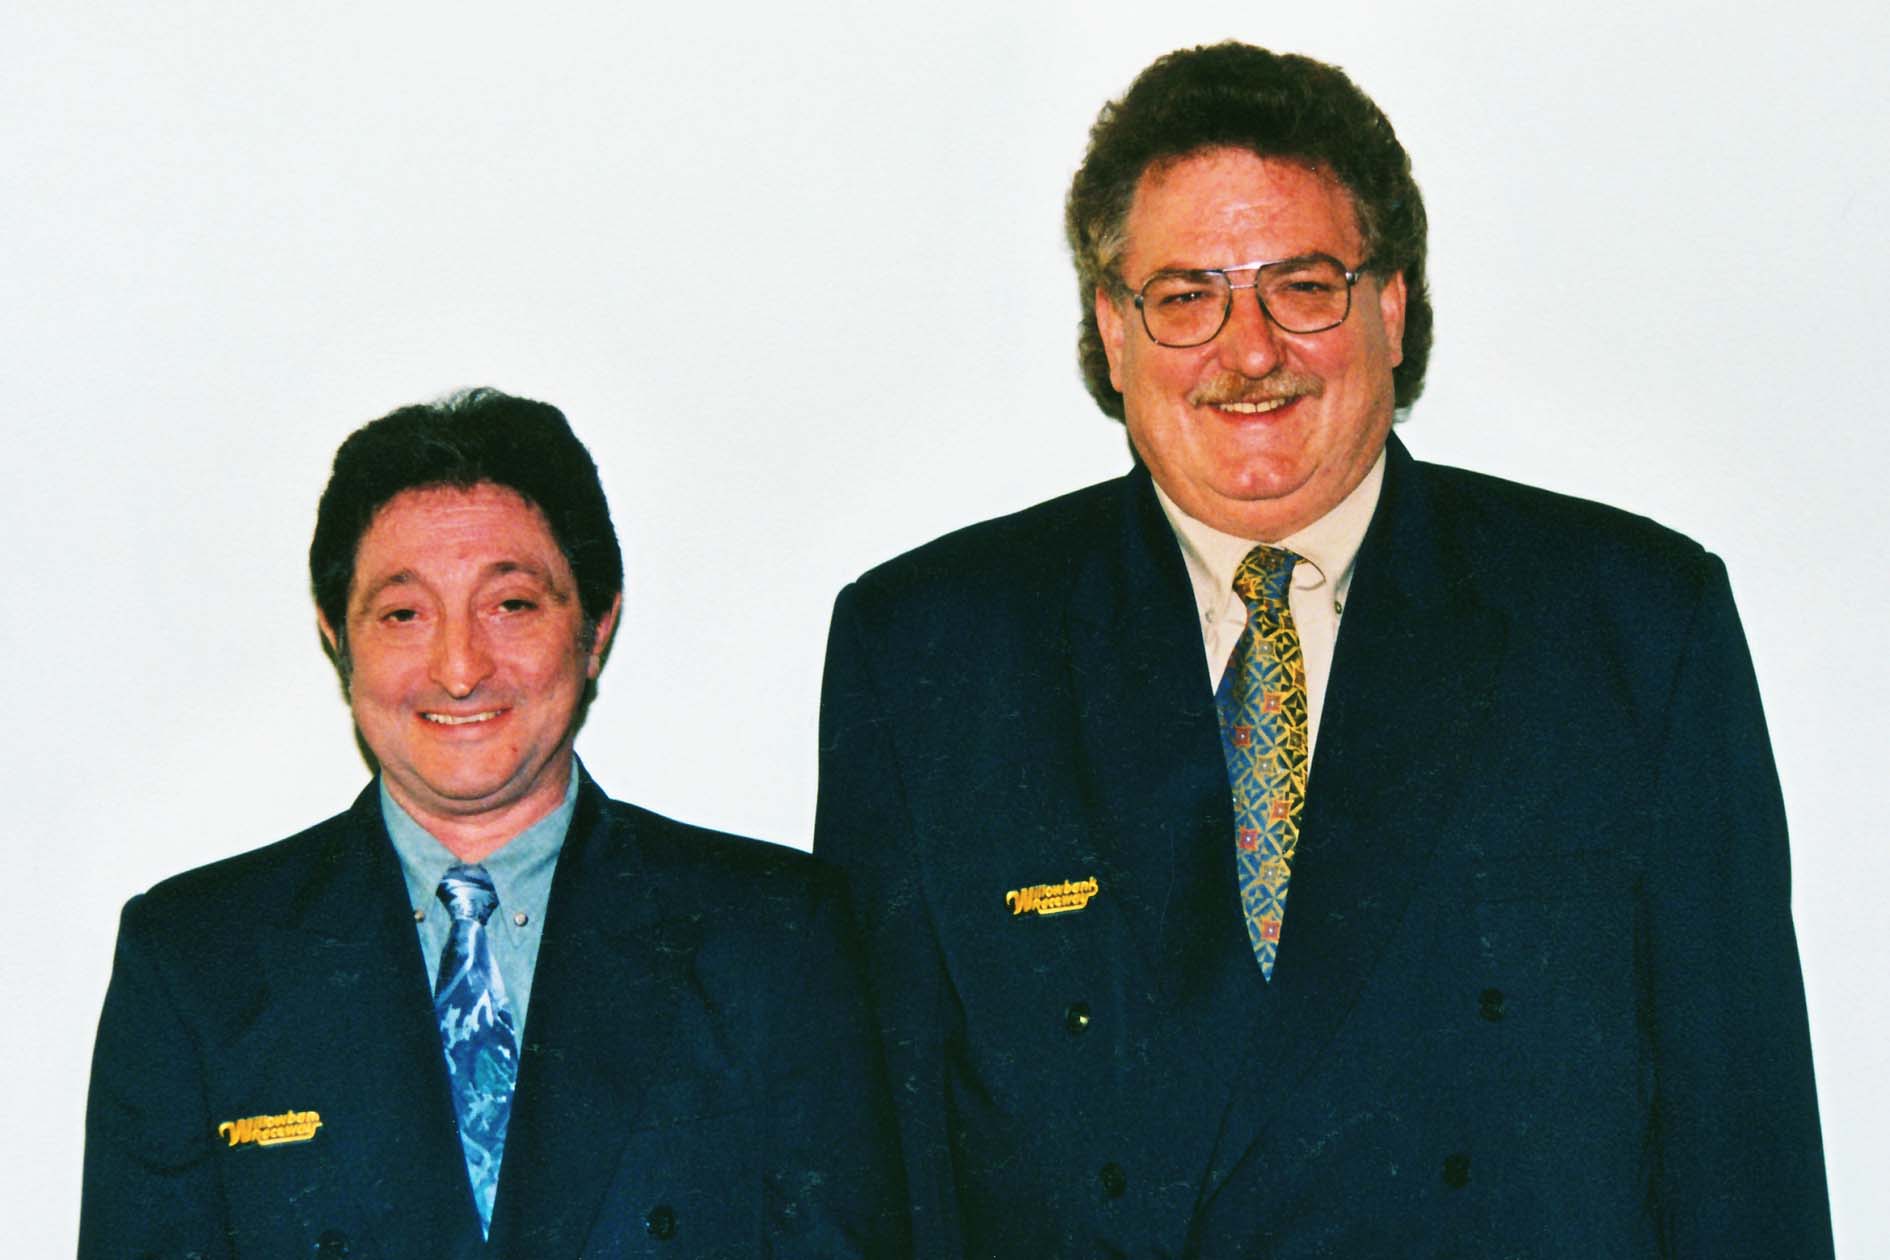 Denis Syrimis and John Winterburn two of the founding board members.